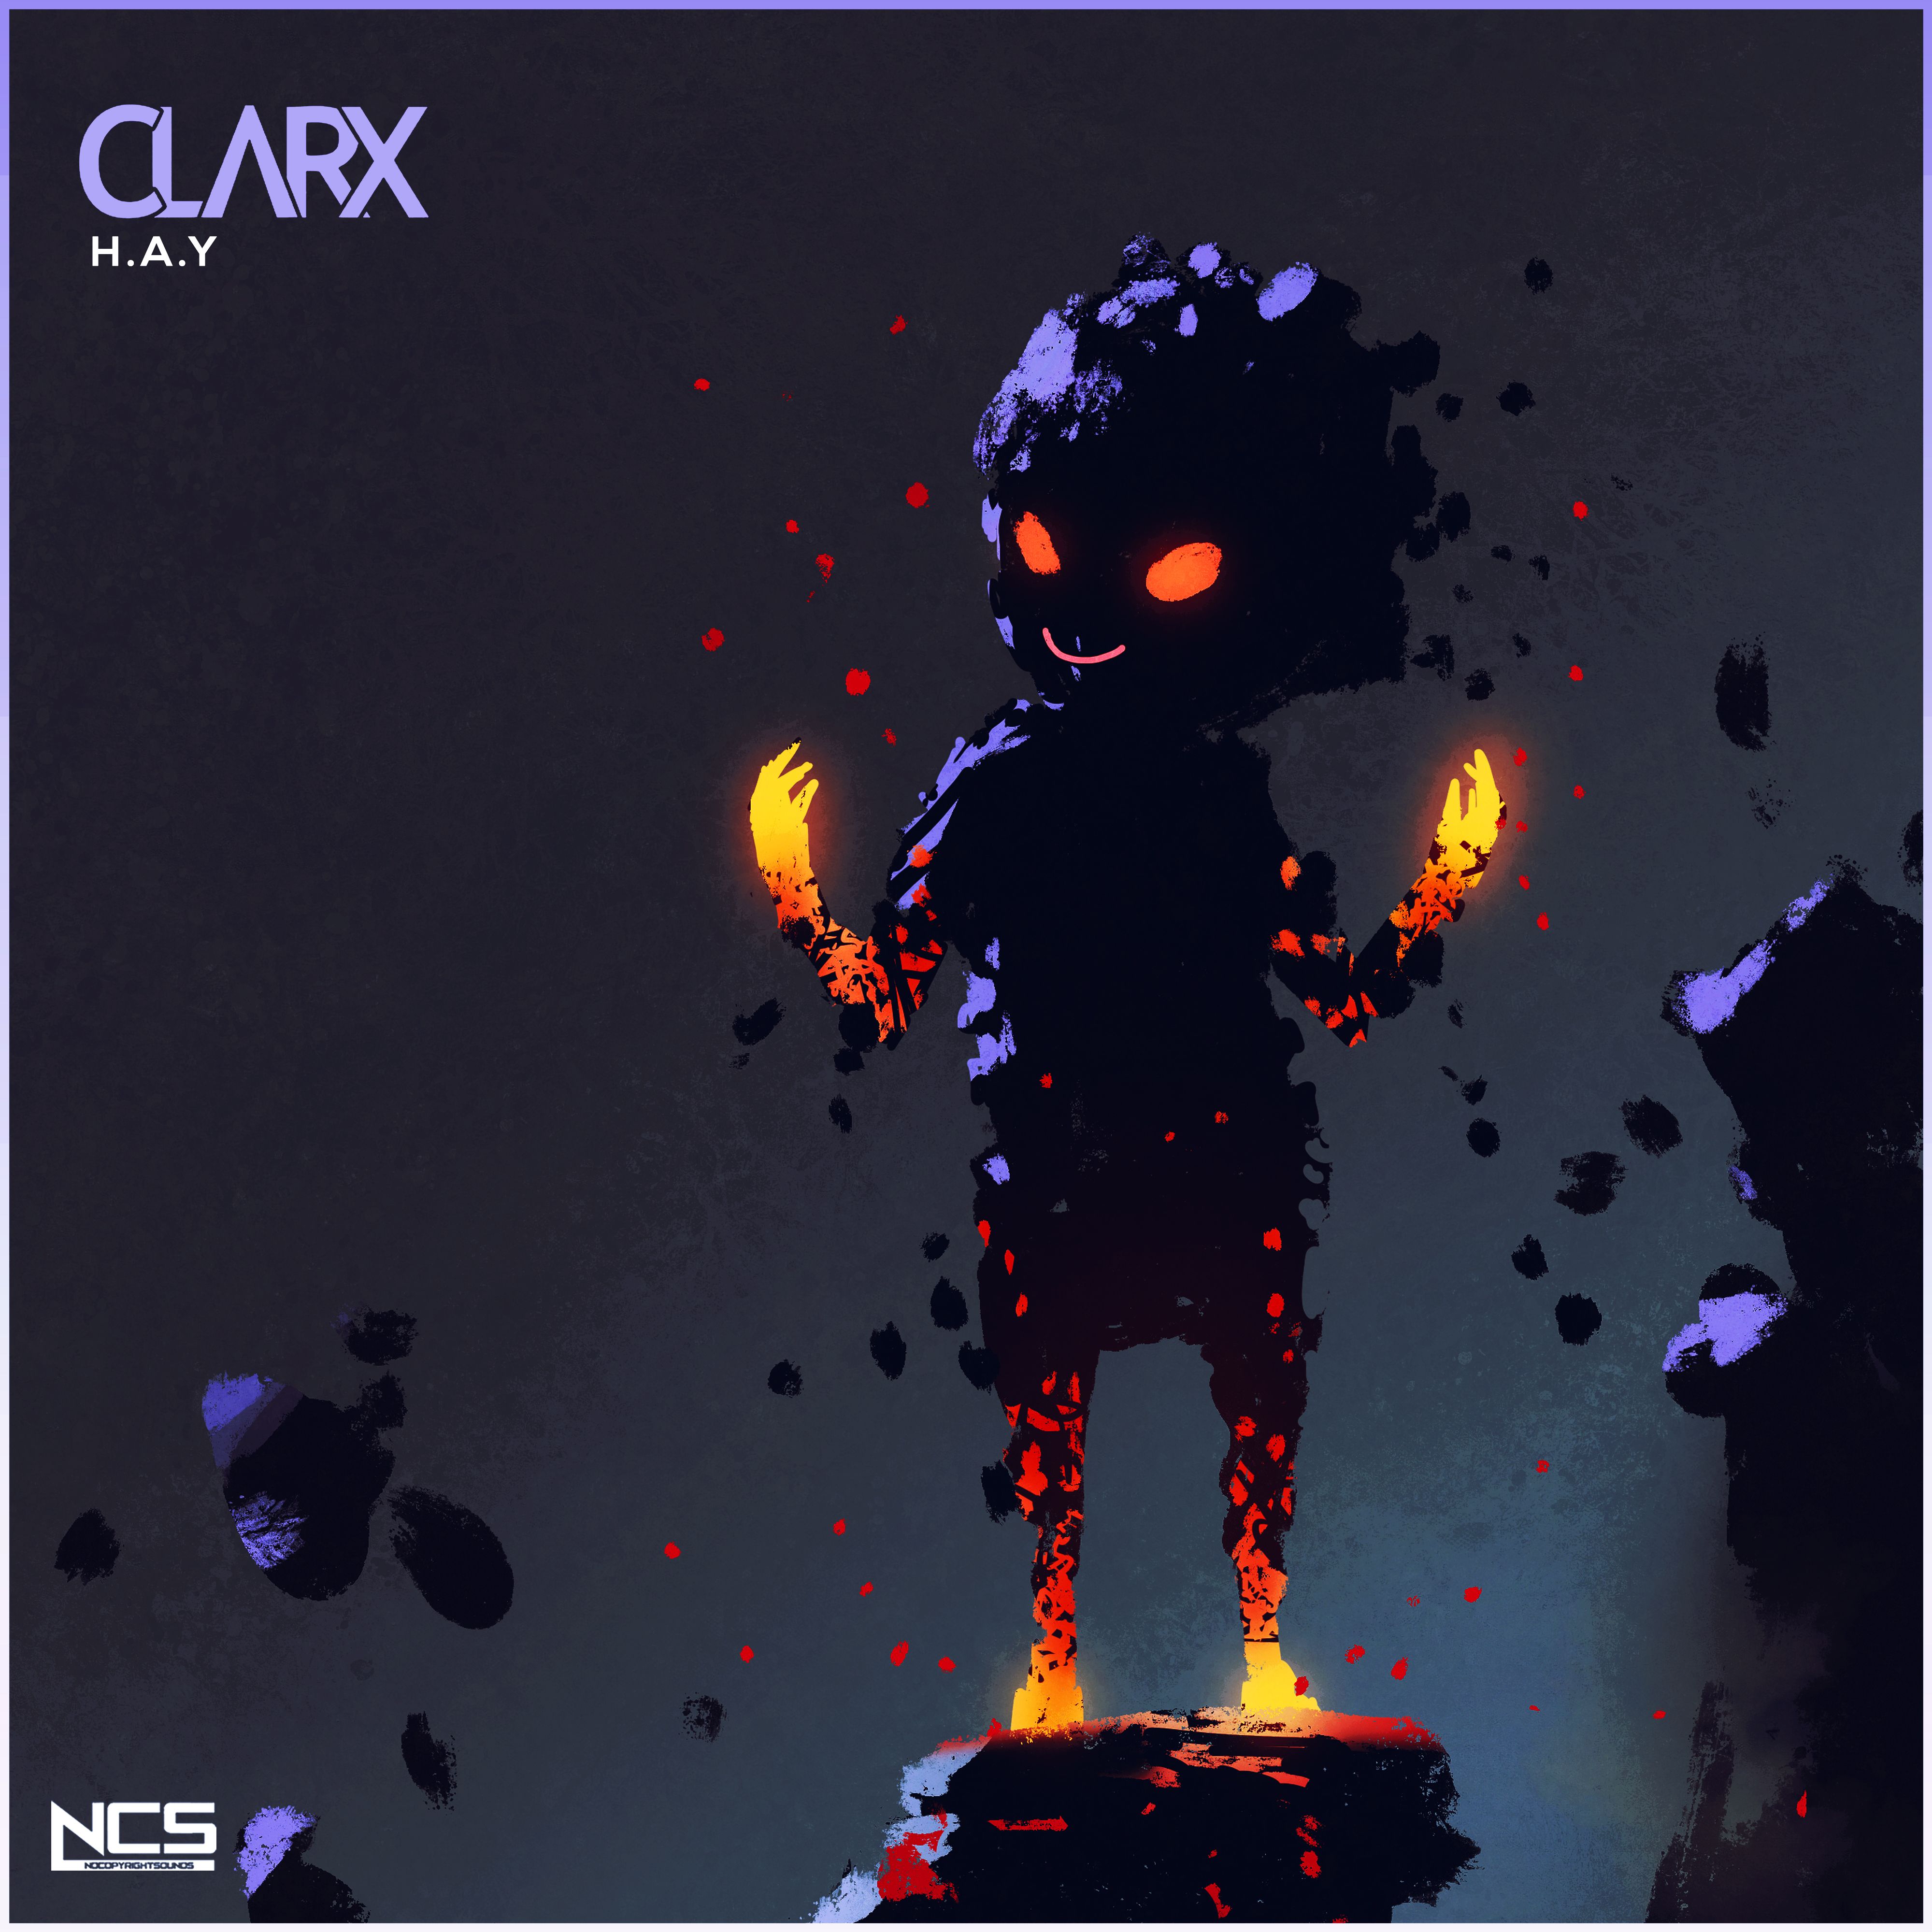 Letöltés Clarx - H.A.Y [NCS Release]